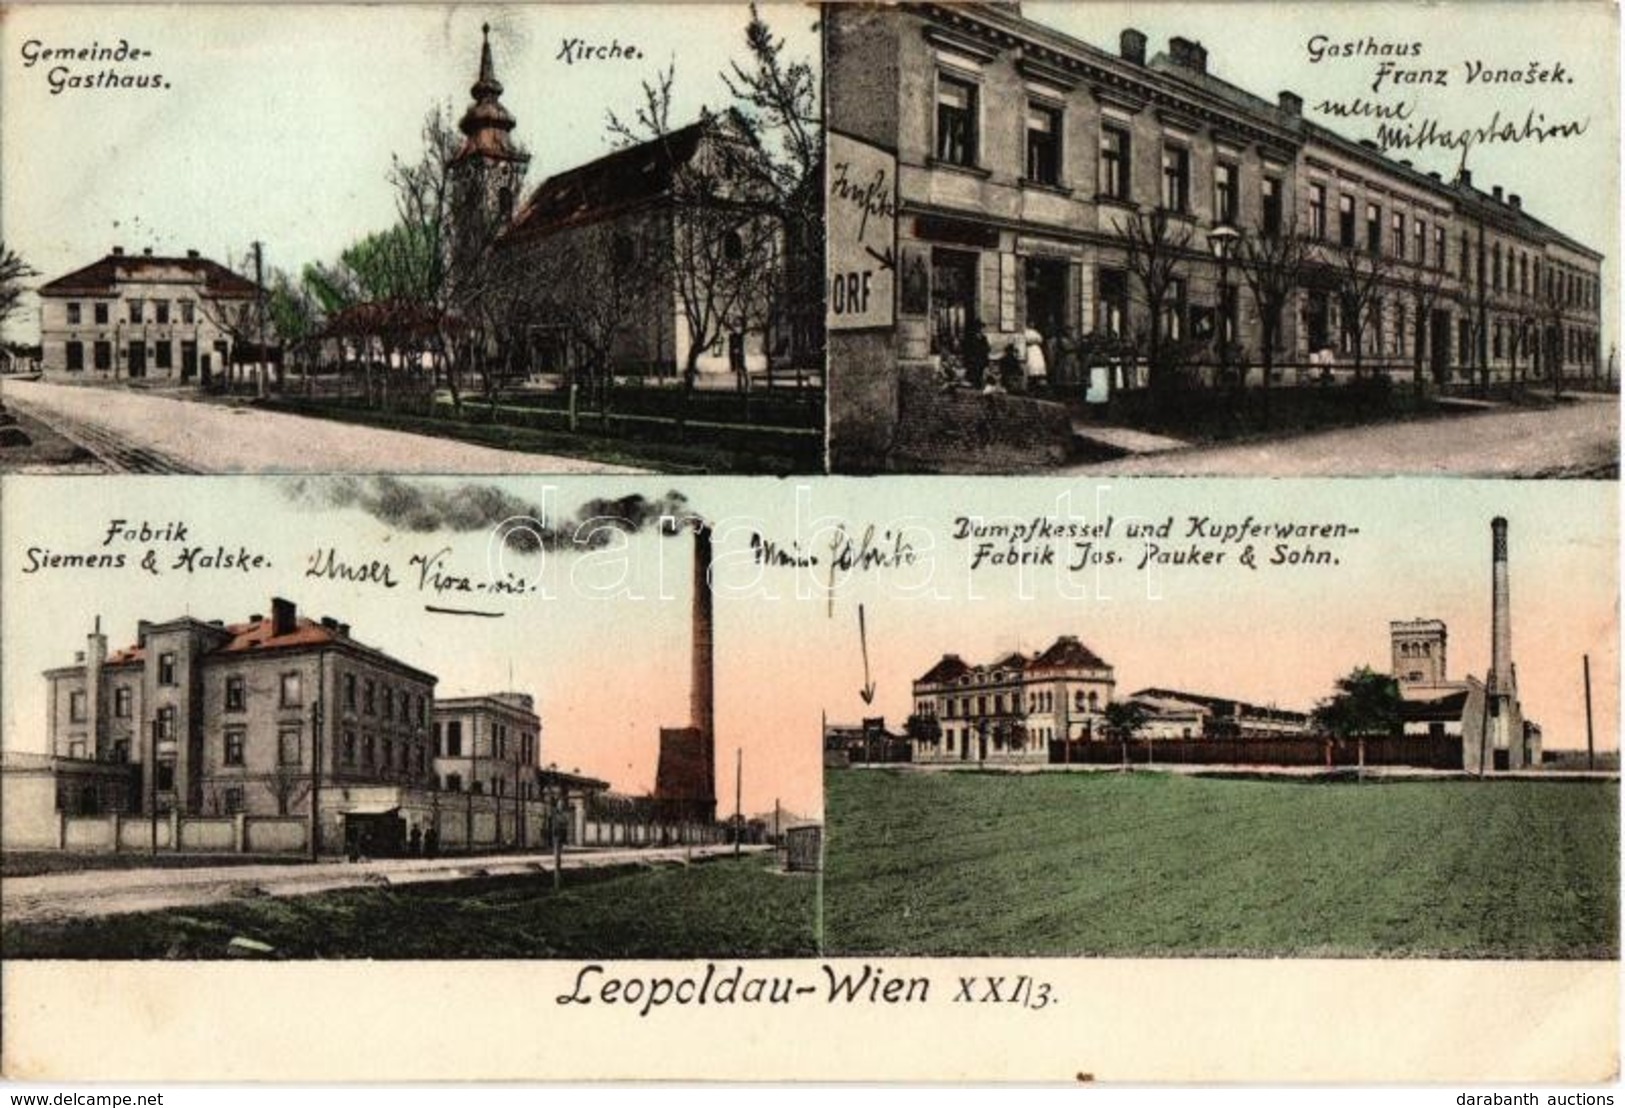 T2/T3 1911 Vienna, Wien XXI. Leopoldau, Gemeinde-Gasthaus, Kirche, Gasthaus Franz Vonasek, Fabrik Siemens & Halske, Damp - Non Classés